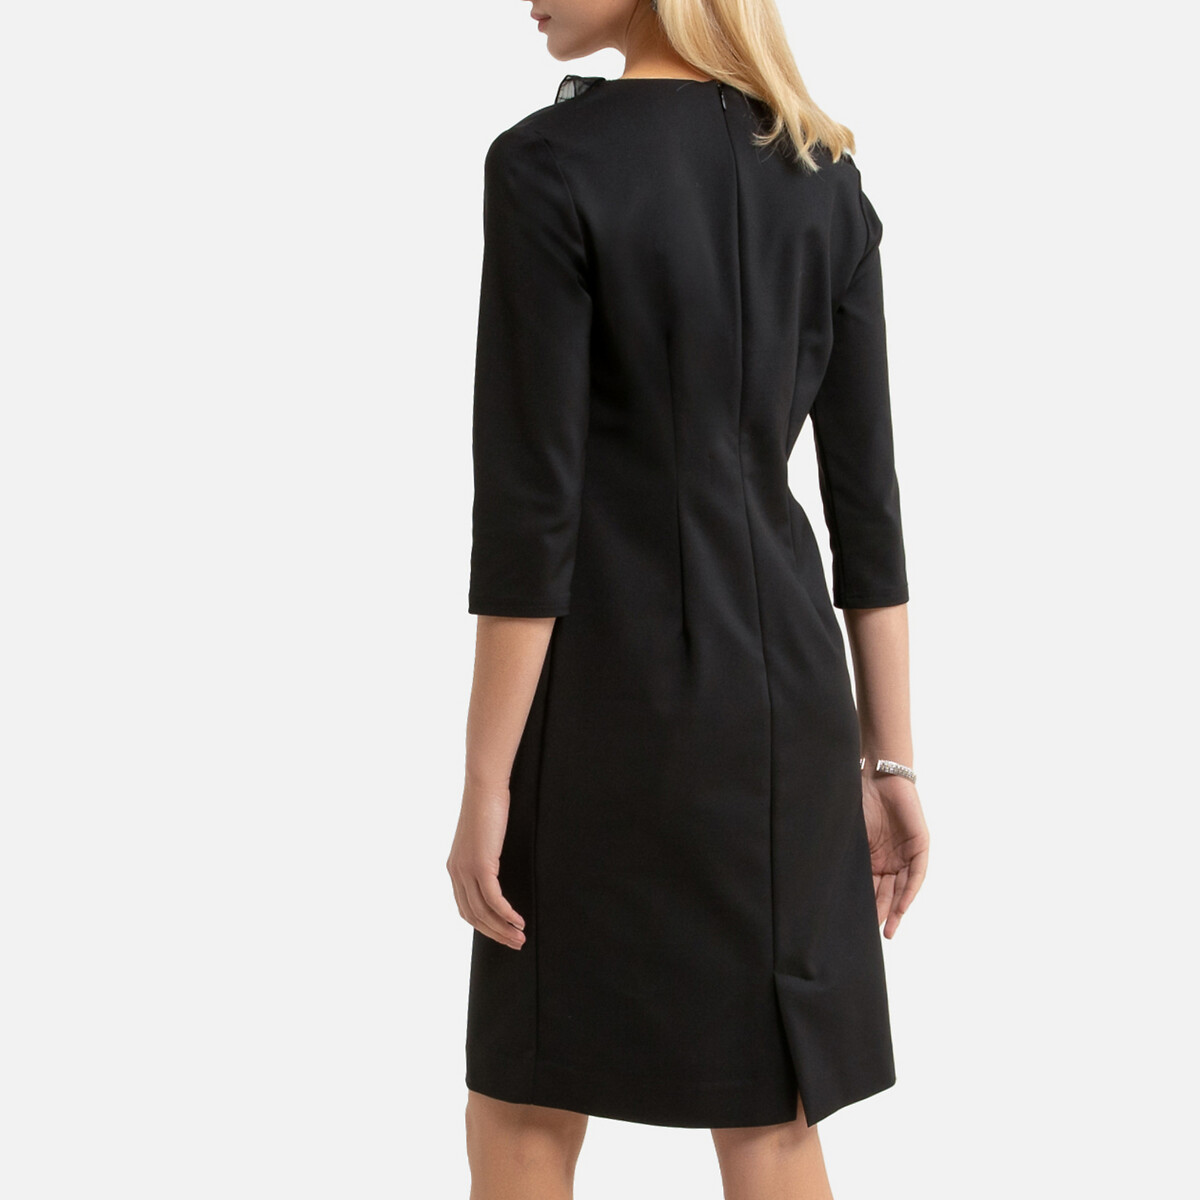 Платье-миди LaRedoute Прямое с длинными рукавами 48 (FR) - 54 (RUS) черный, размер 48 (FR) - 54 (RUS) Прямое с длинными рукавами 48 (FR) - 54 (RUS) черный - фото 4